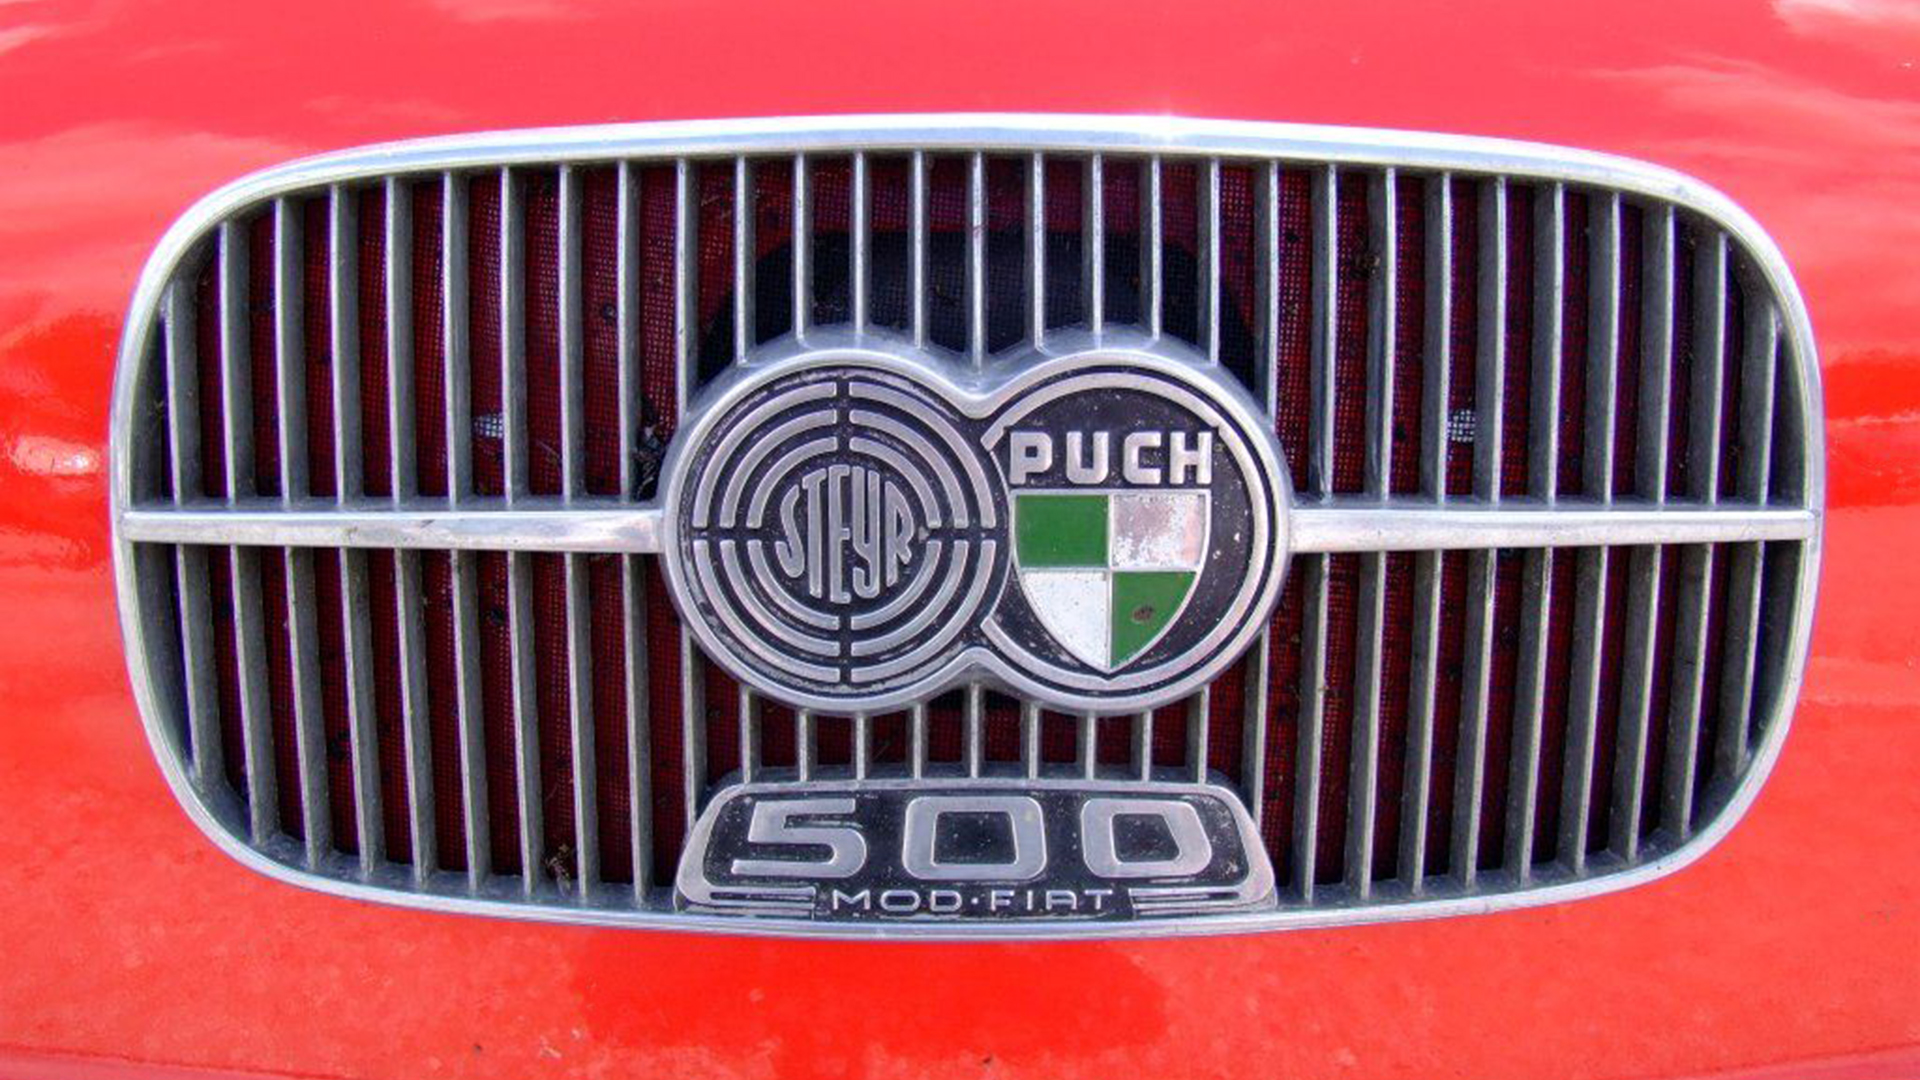 El origen de la actual fábrica fue la compañía que formaban Steyr-Daimler-Puch, adquirida por Magna International en 1998